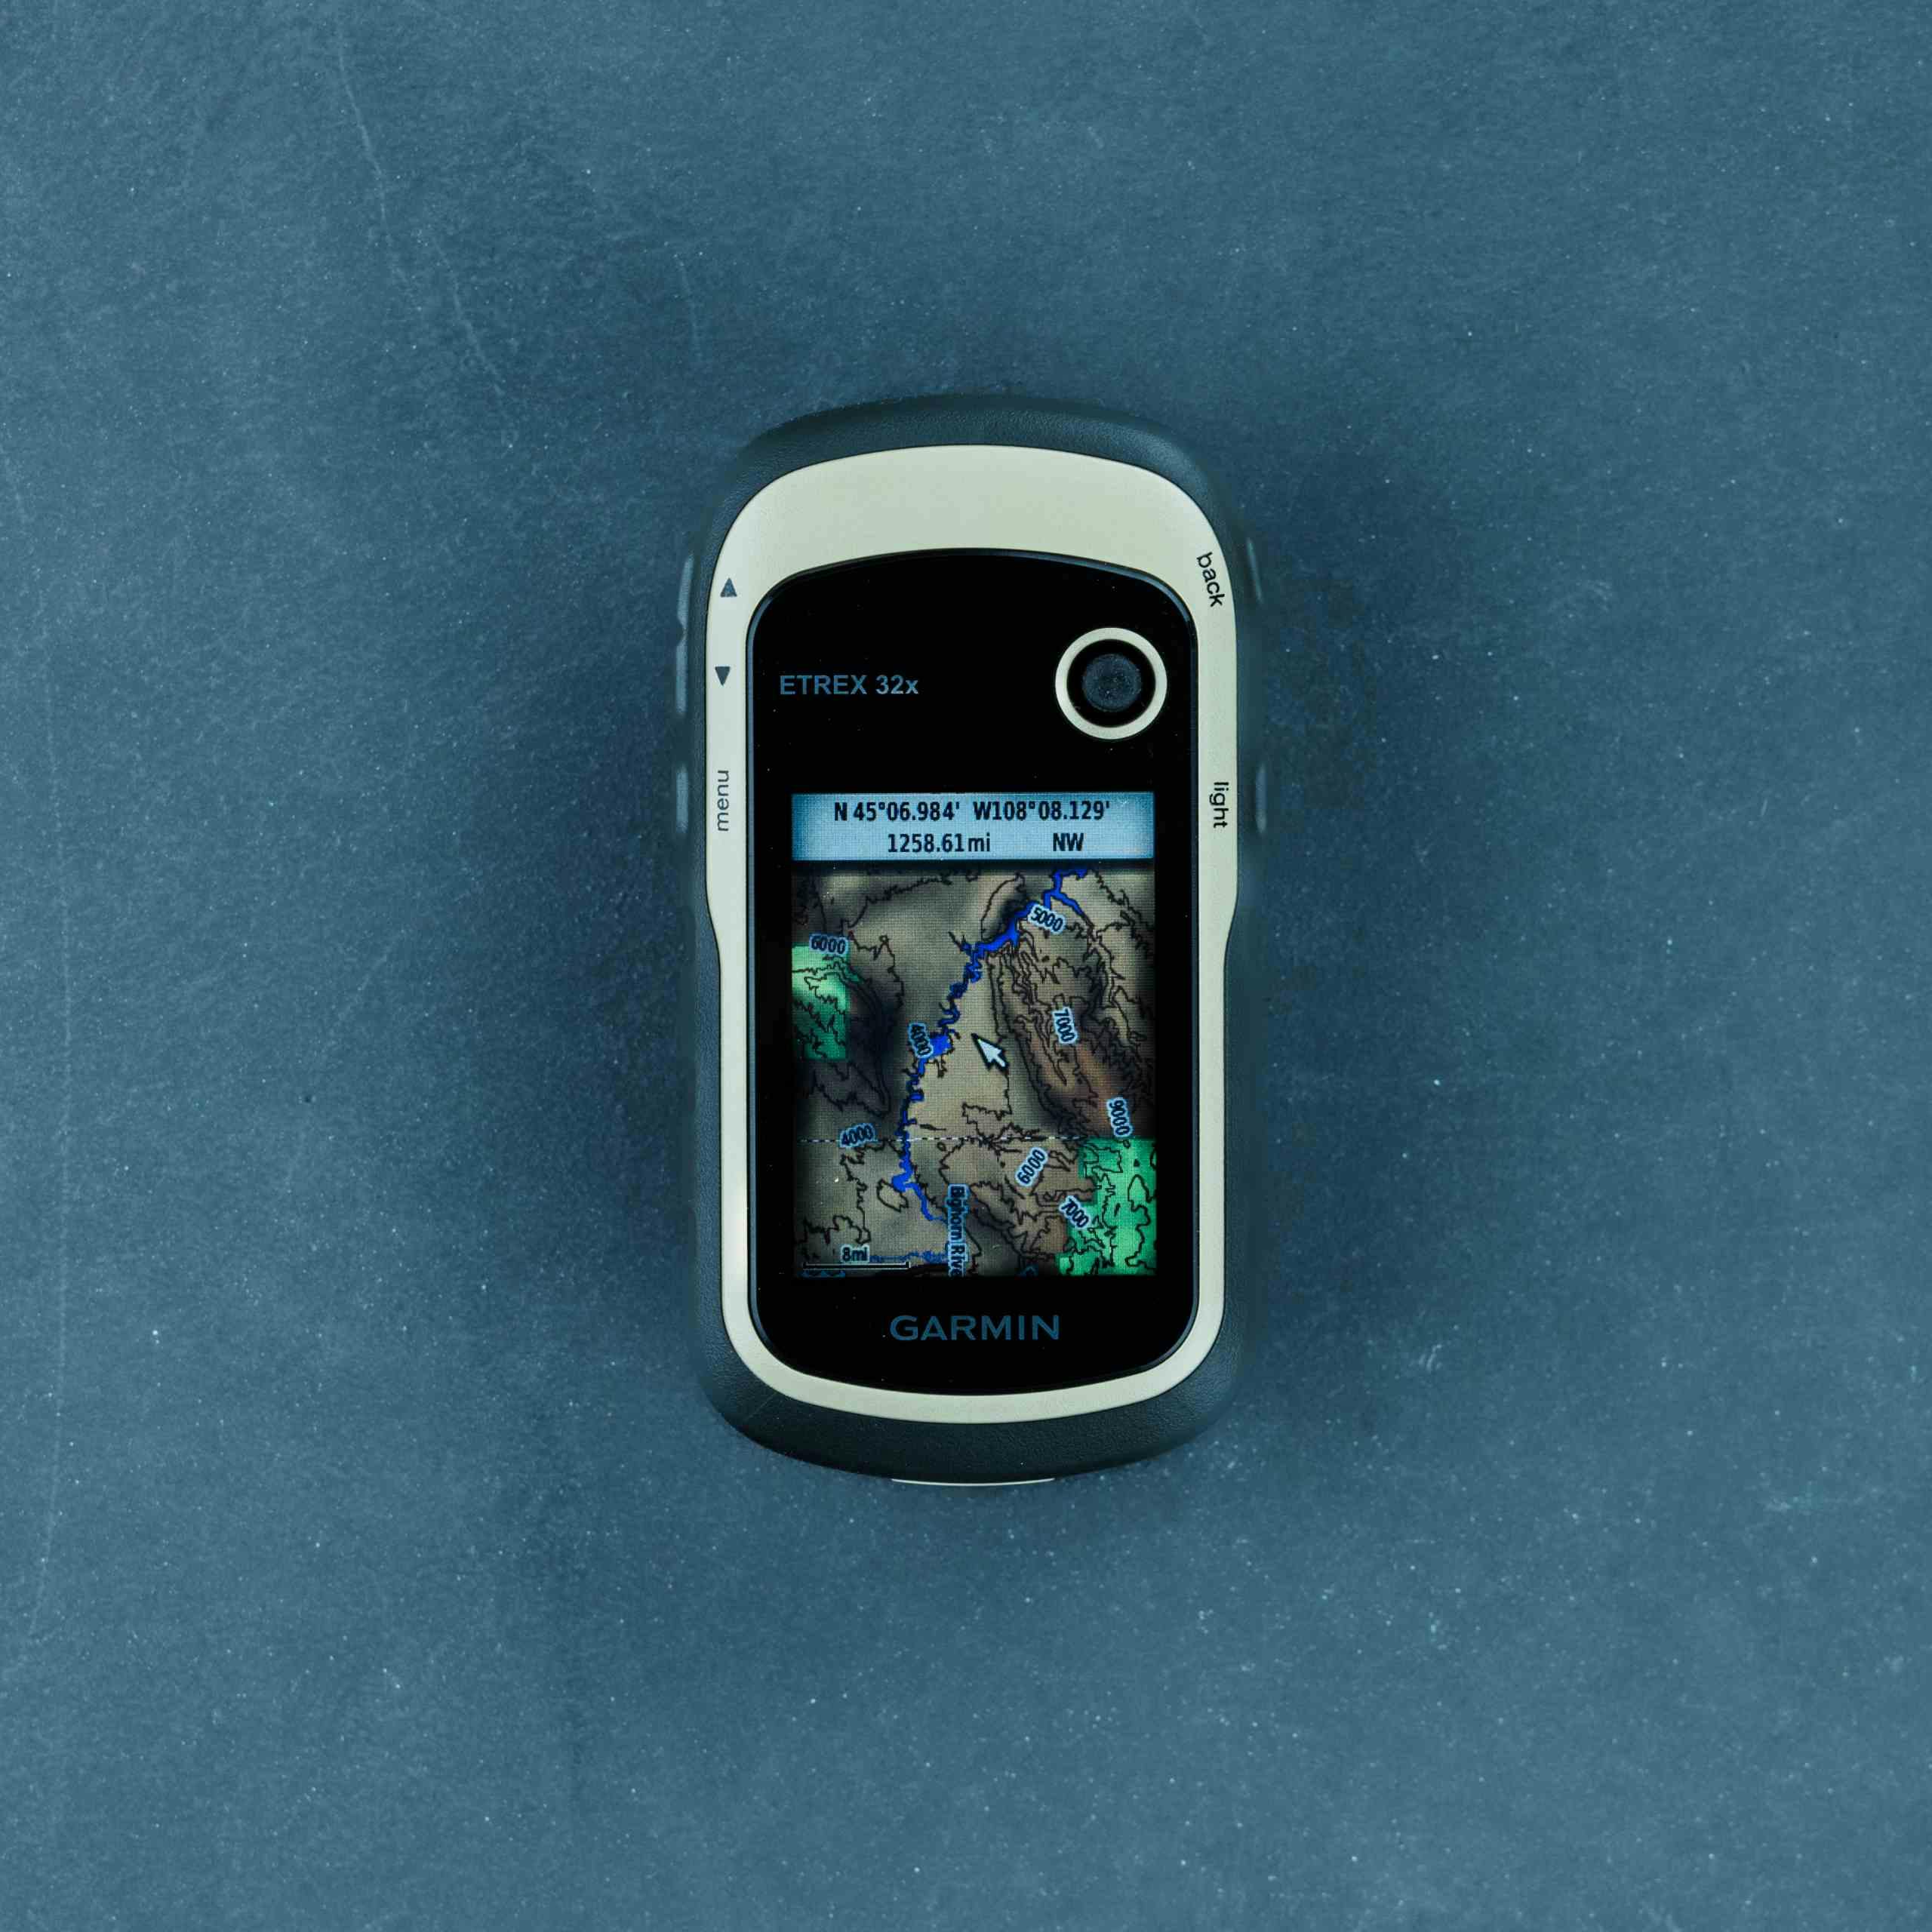 Garmin eTrex 32x,Handheld GPS Navigator with 6Ave Travel Kit (010-02257-00)  